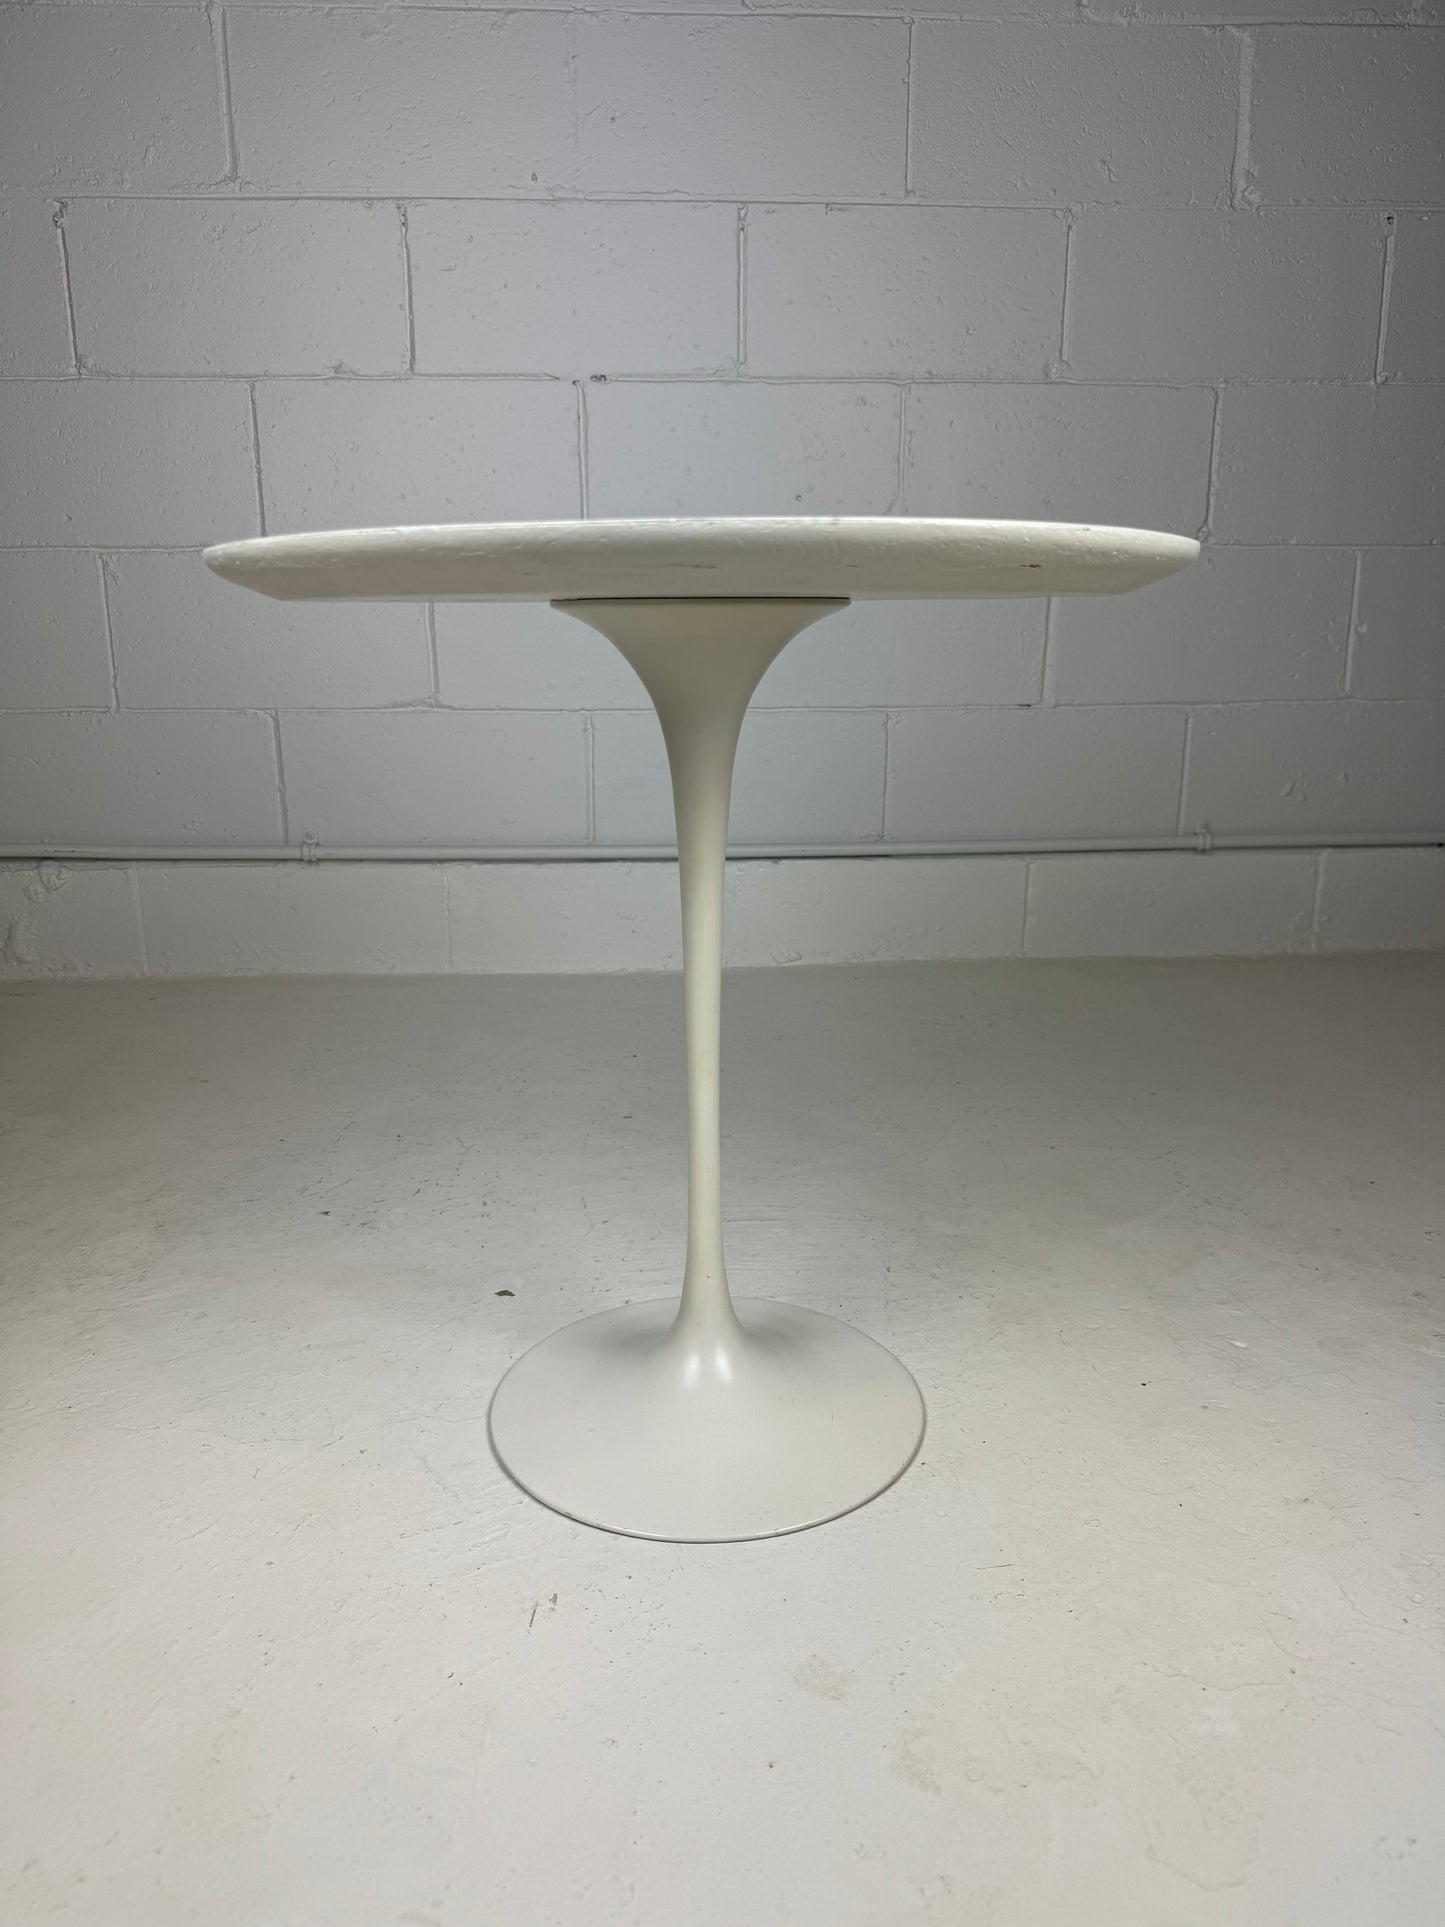 Knoll Saarinen Tulip Side Table 20" Vintage